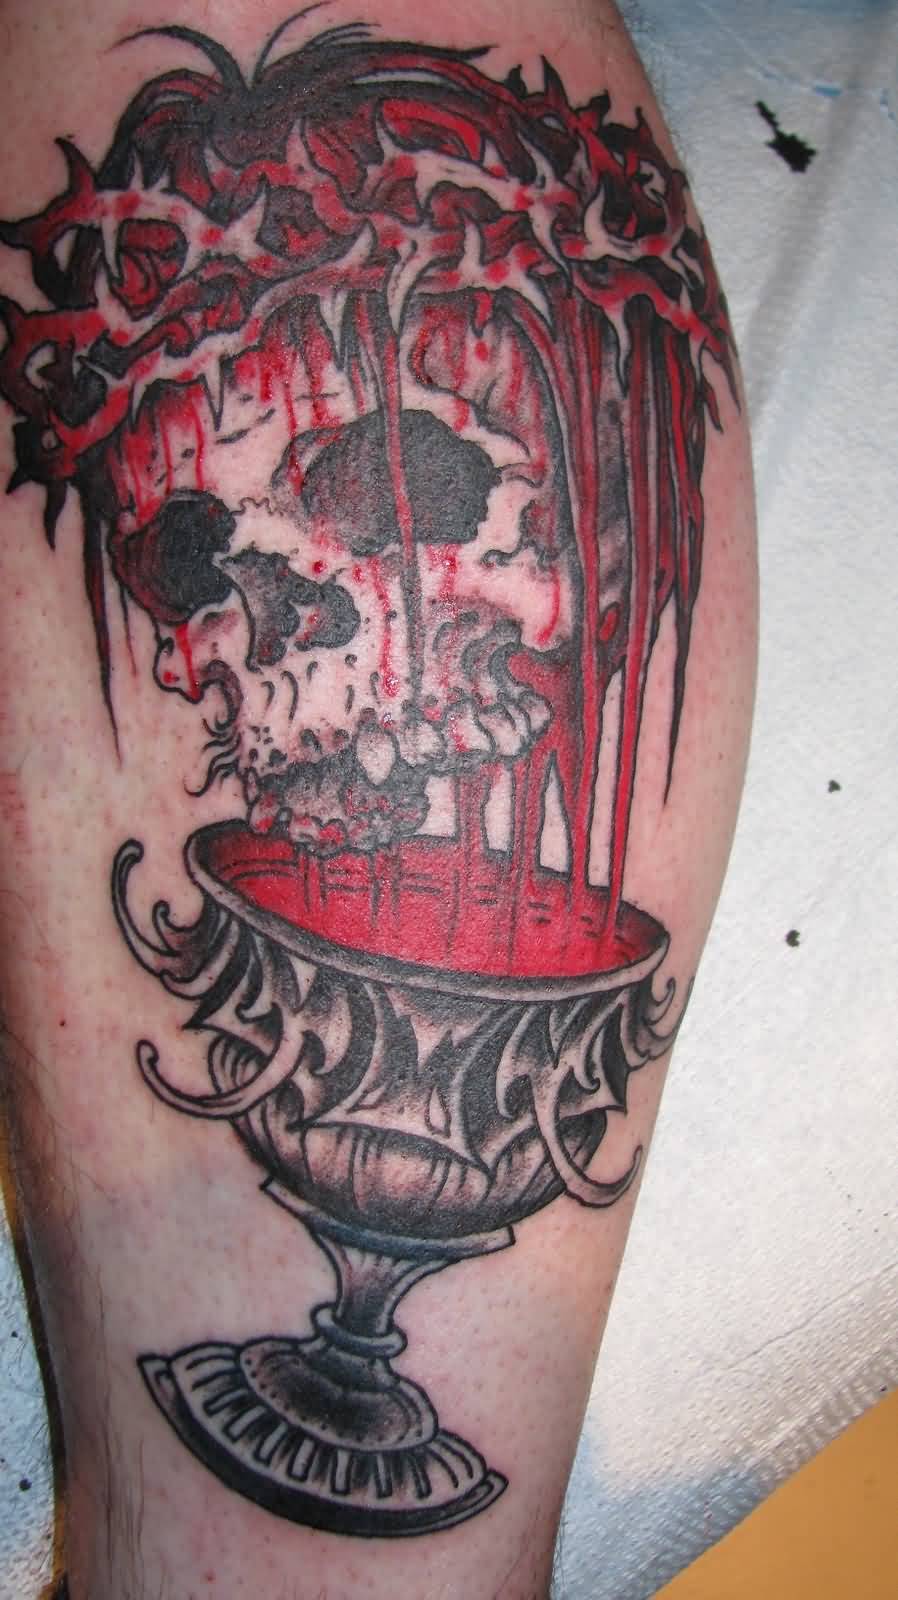 Bleeding Skull Chalice Tattoo On Leg